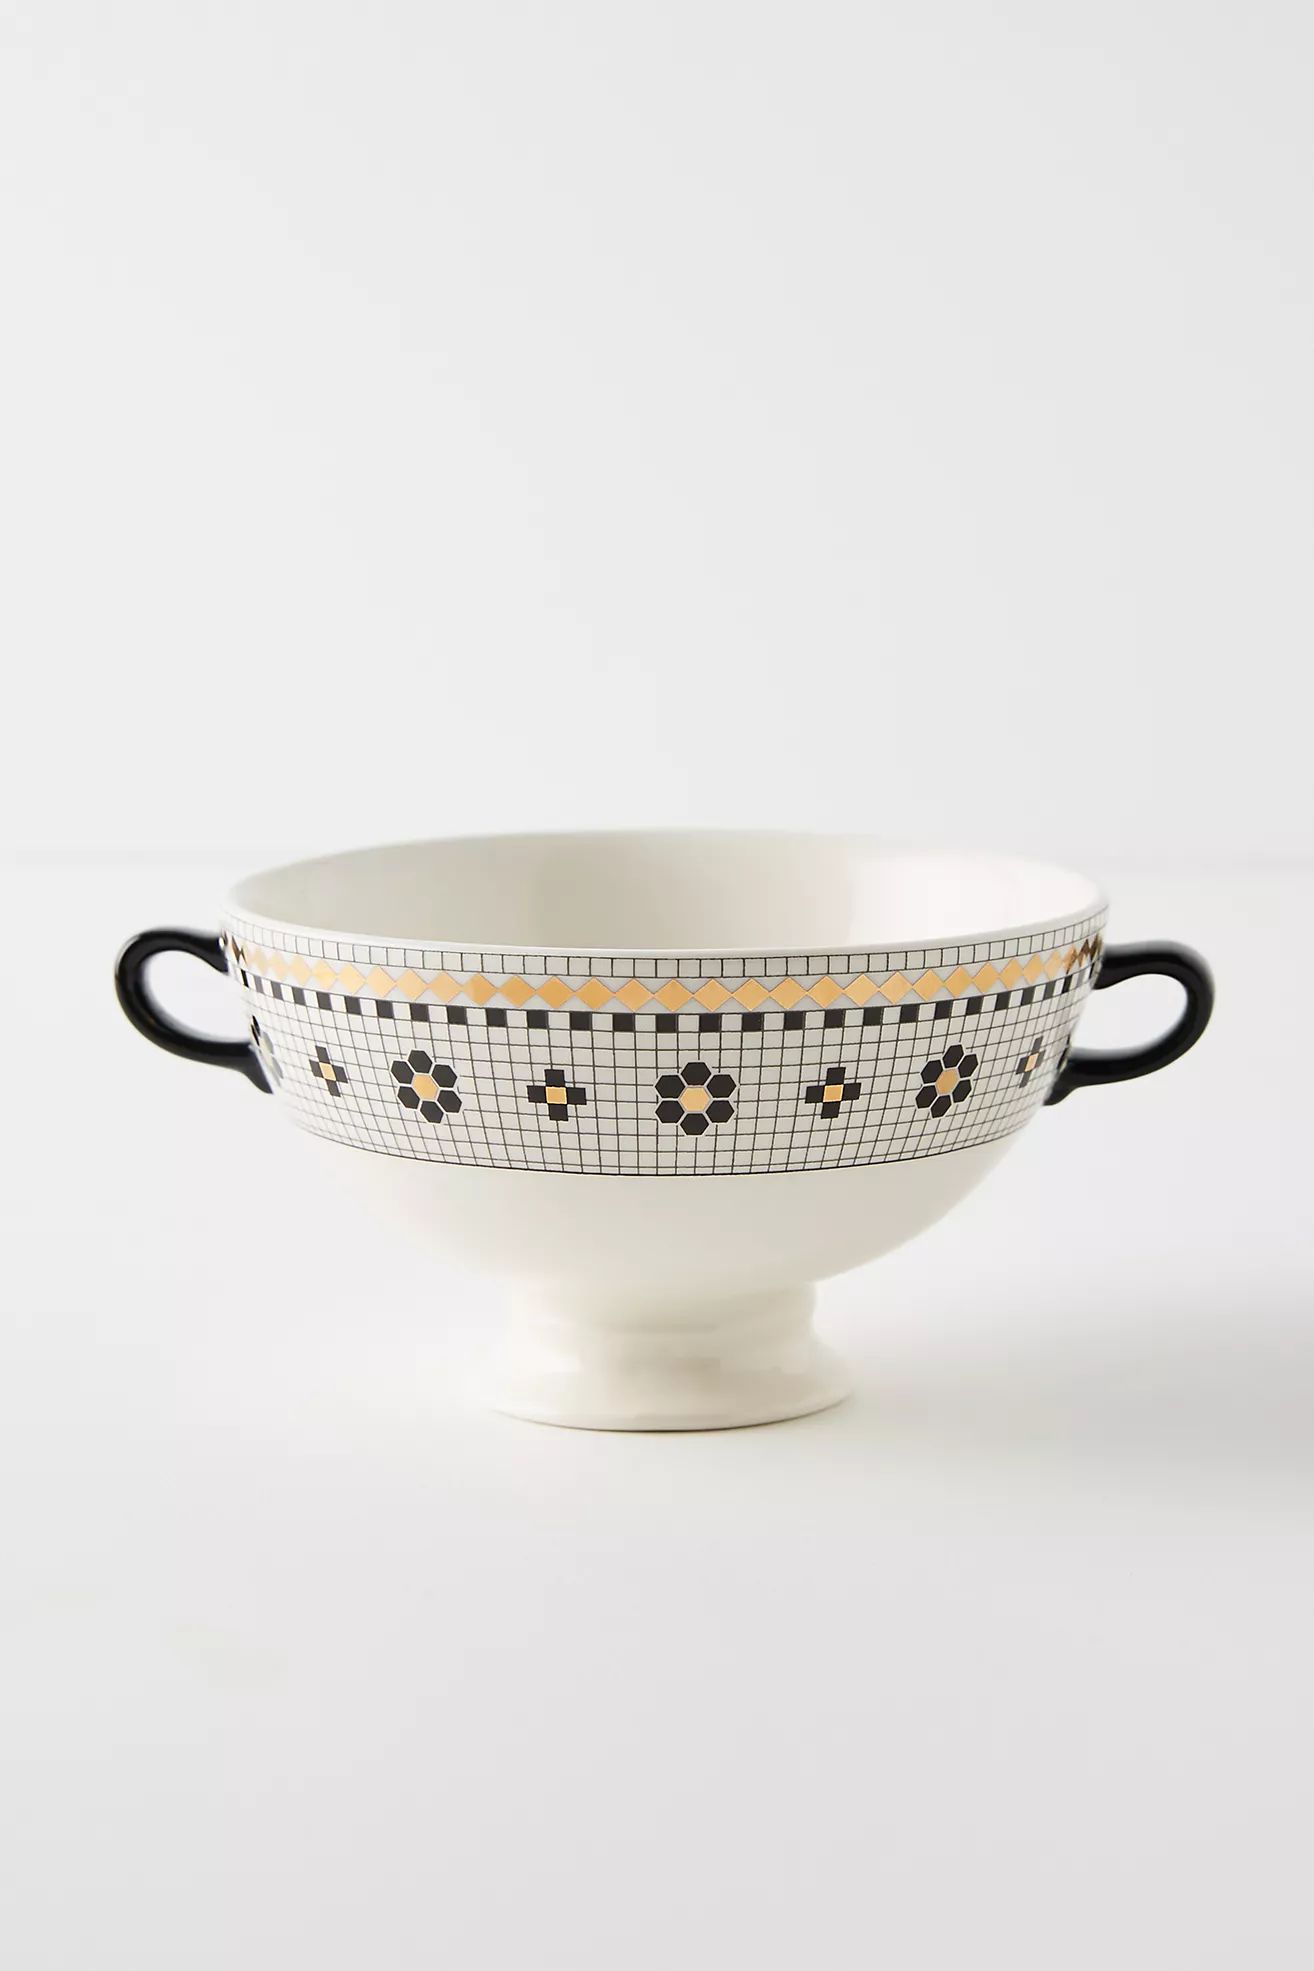 Bistro Tile Bowls, Set of 4 | Anthropologie (US)